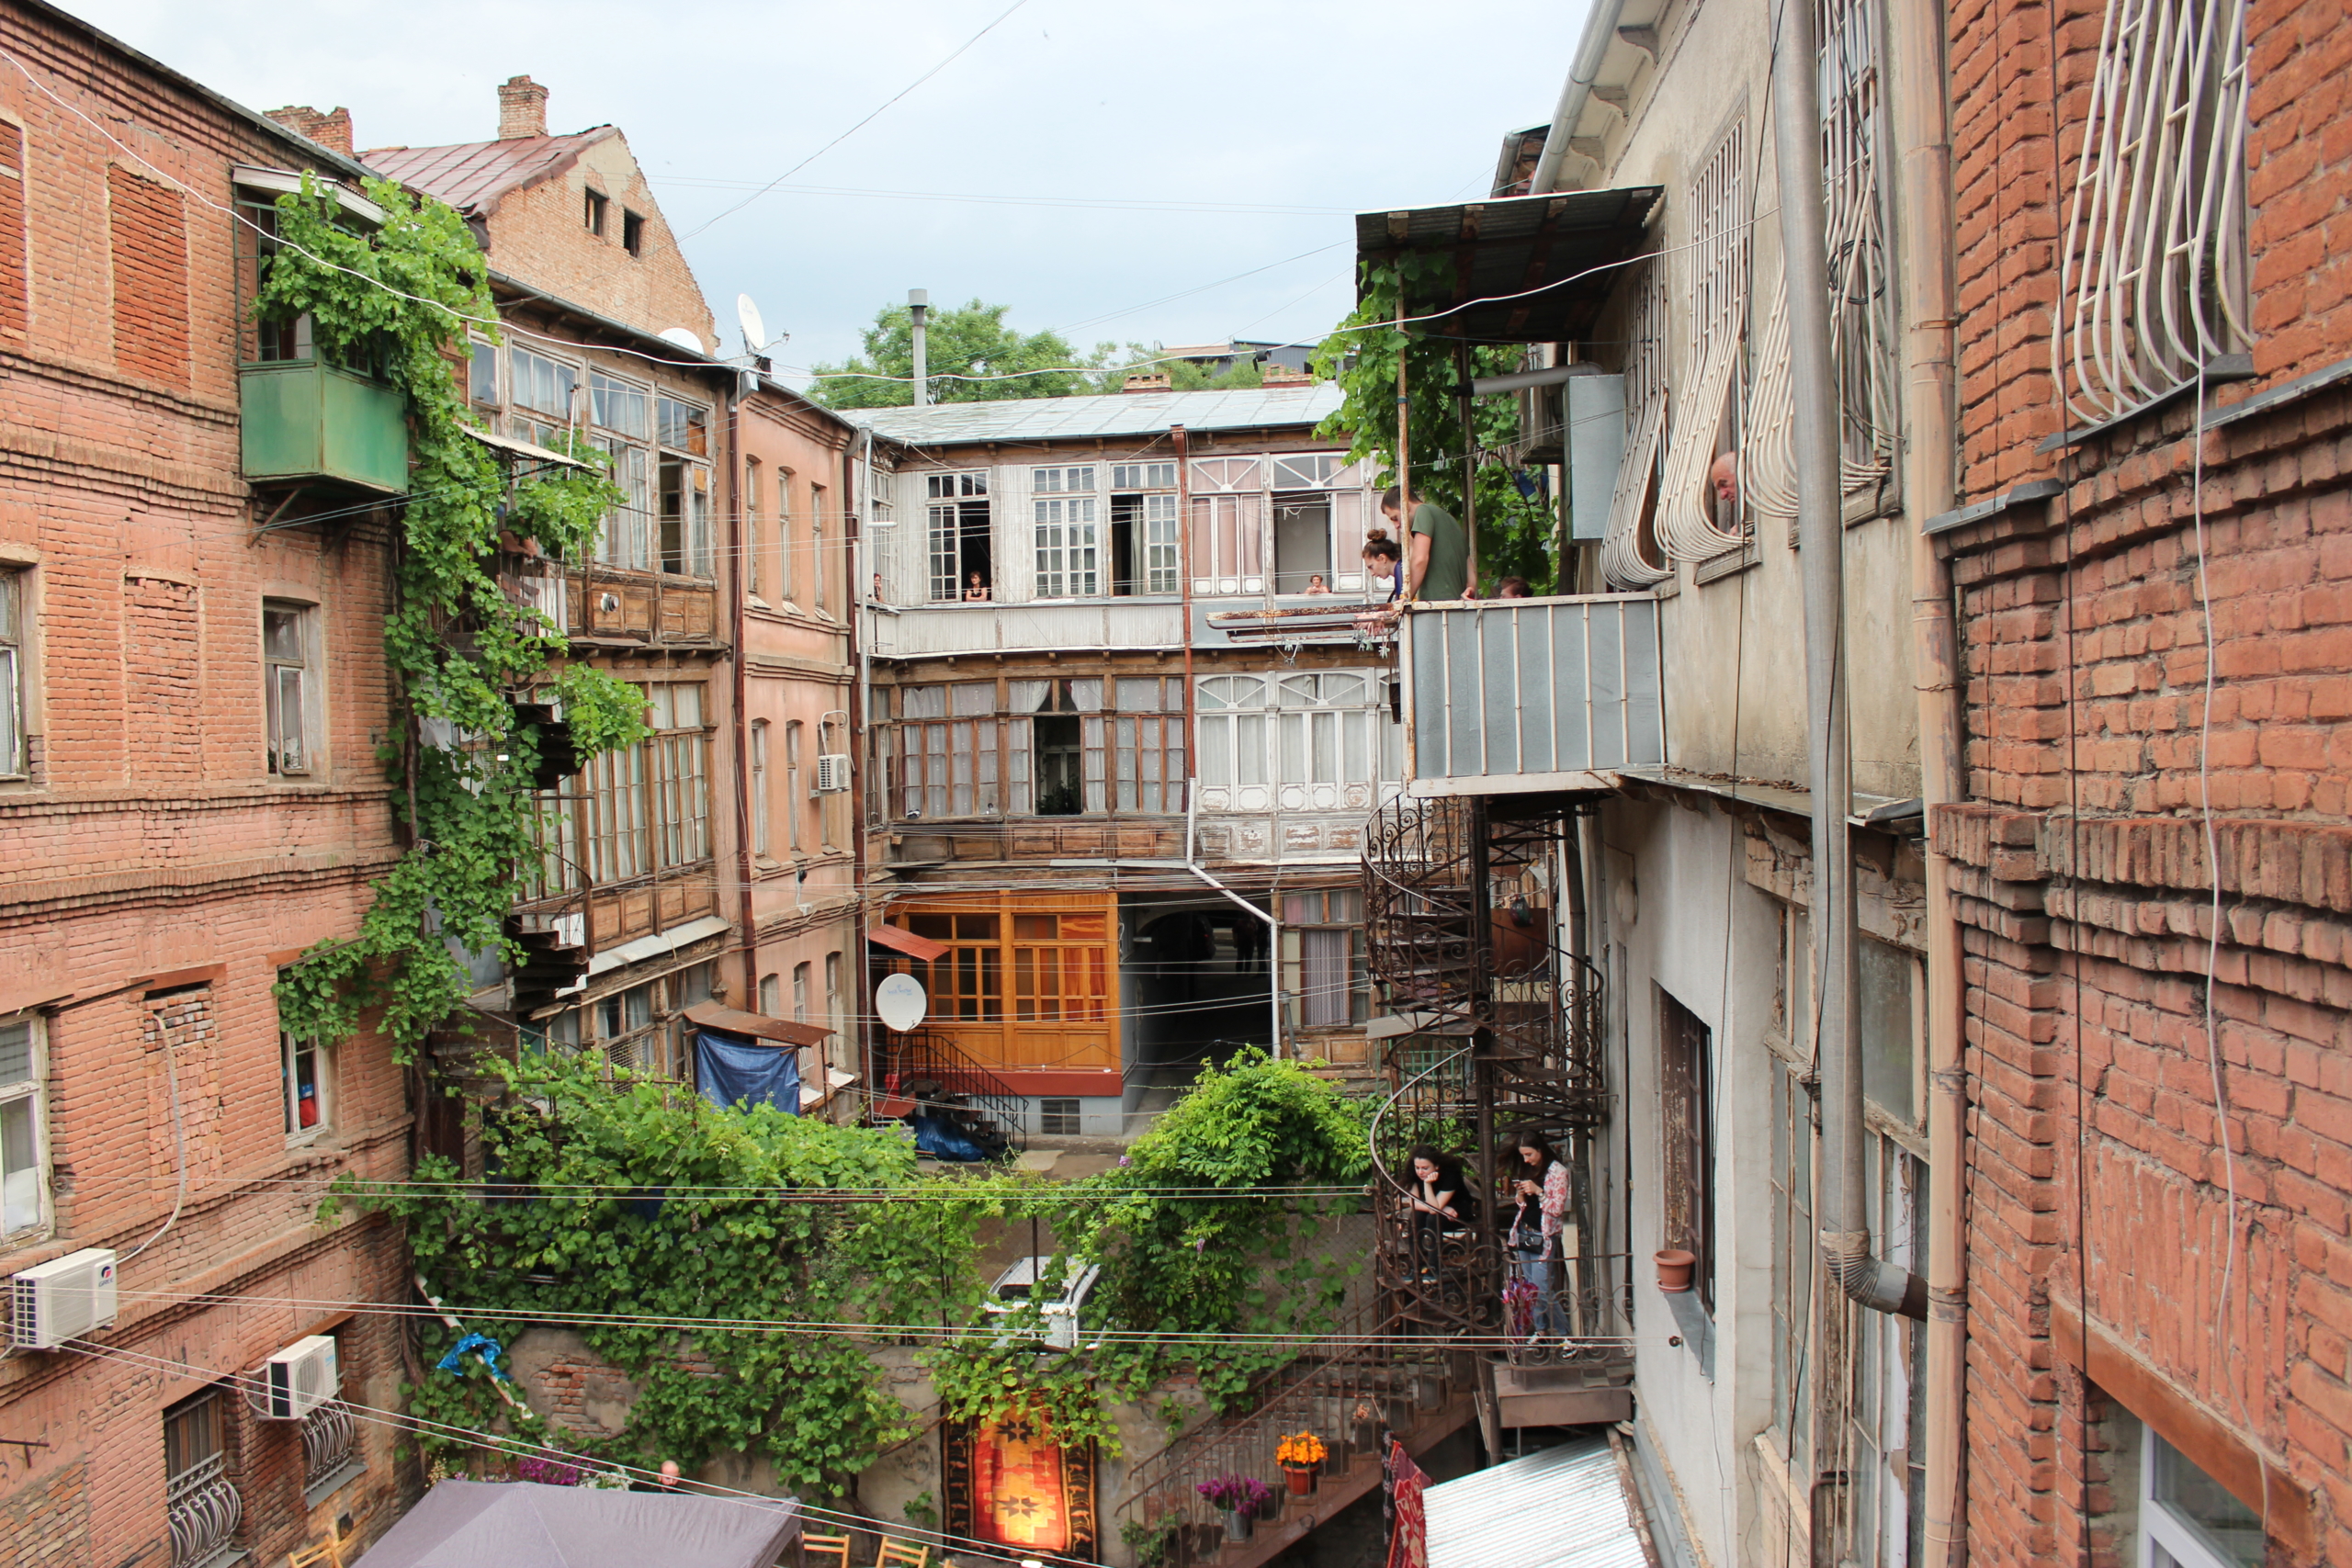 52 способа интересно провести время в Тбилиси